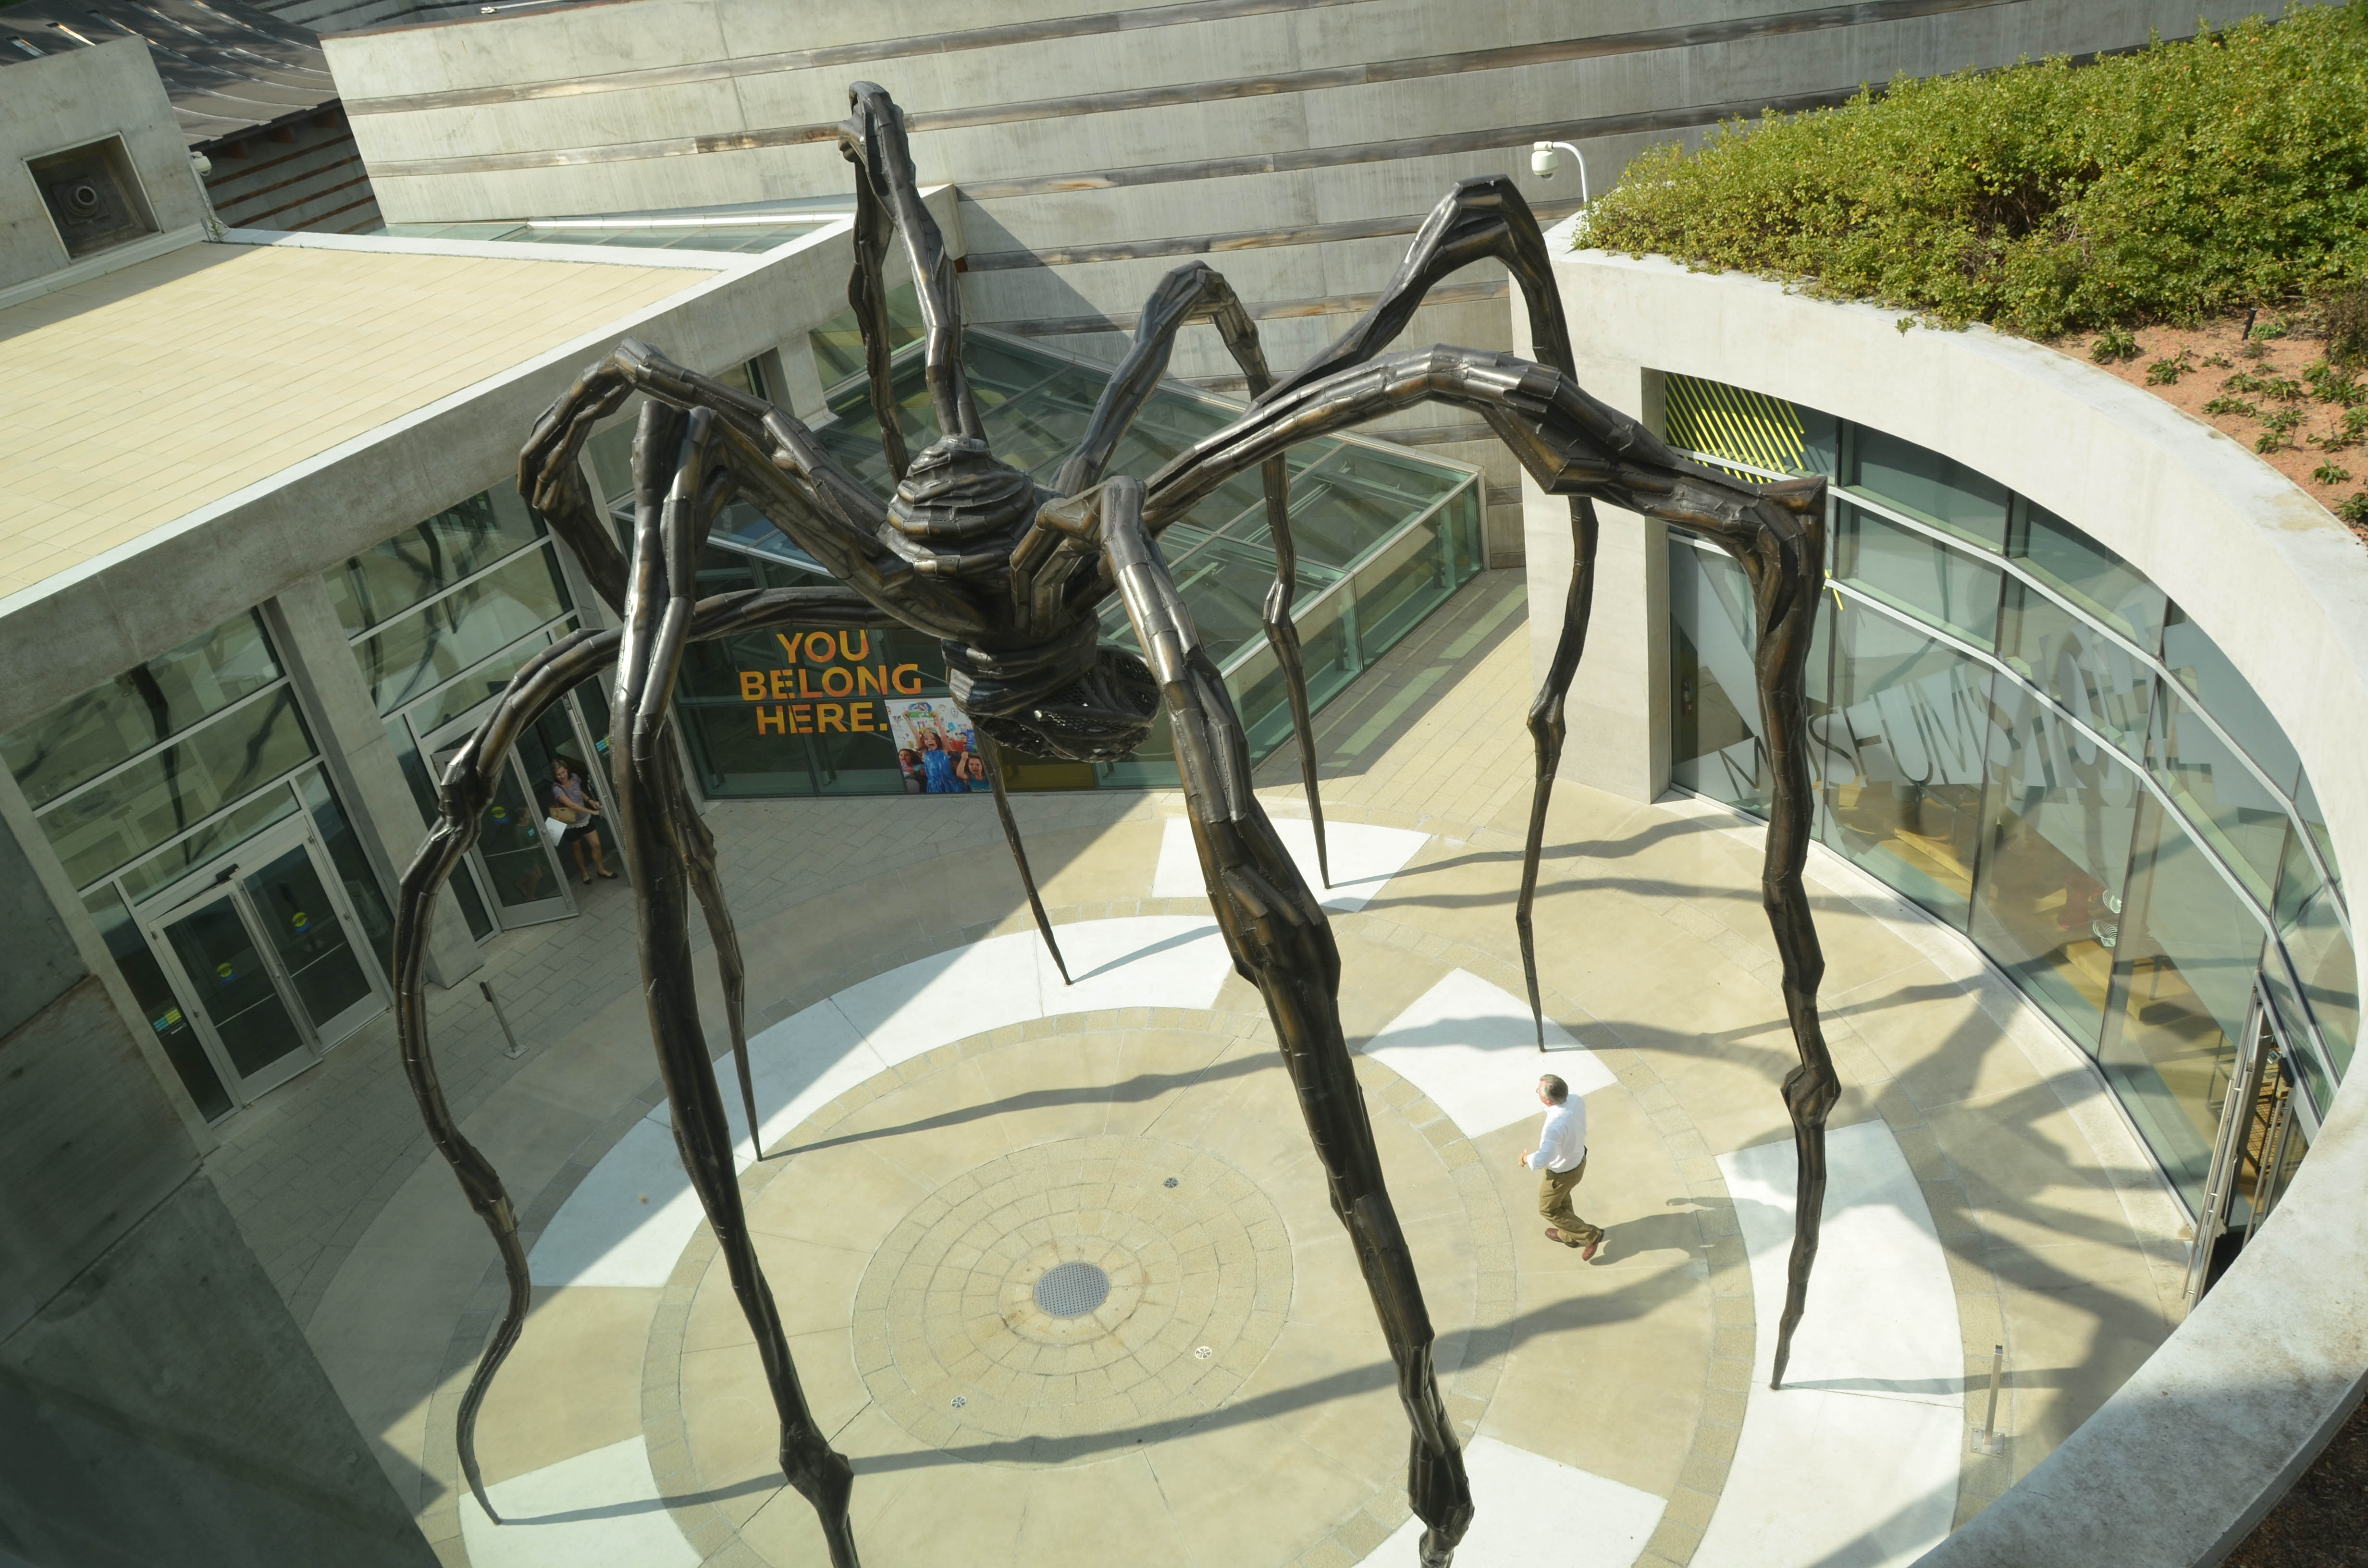 Spider sculpture in the courtyard.